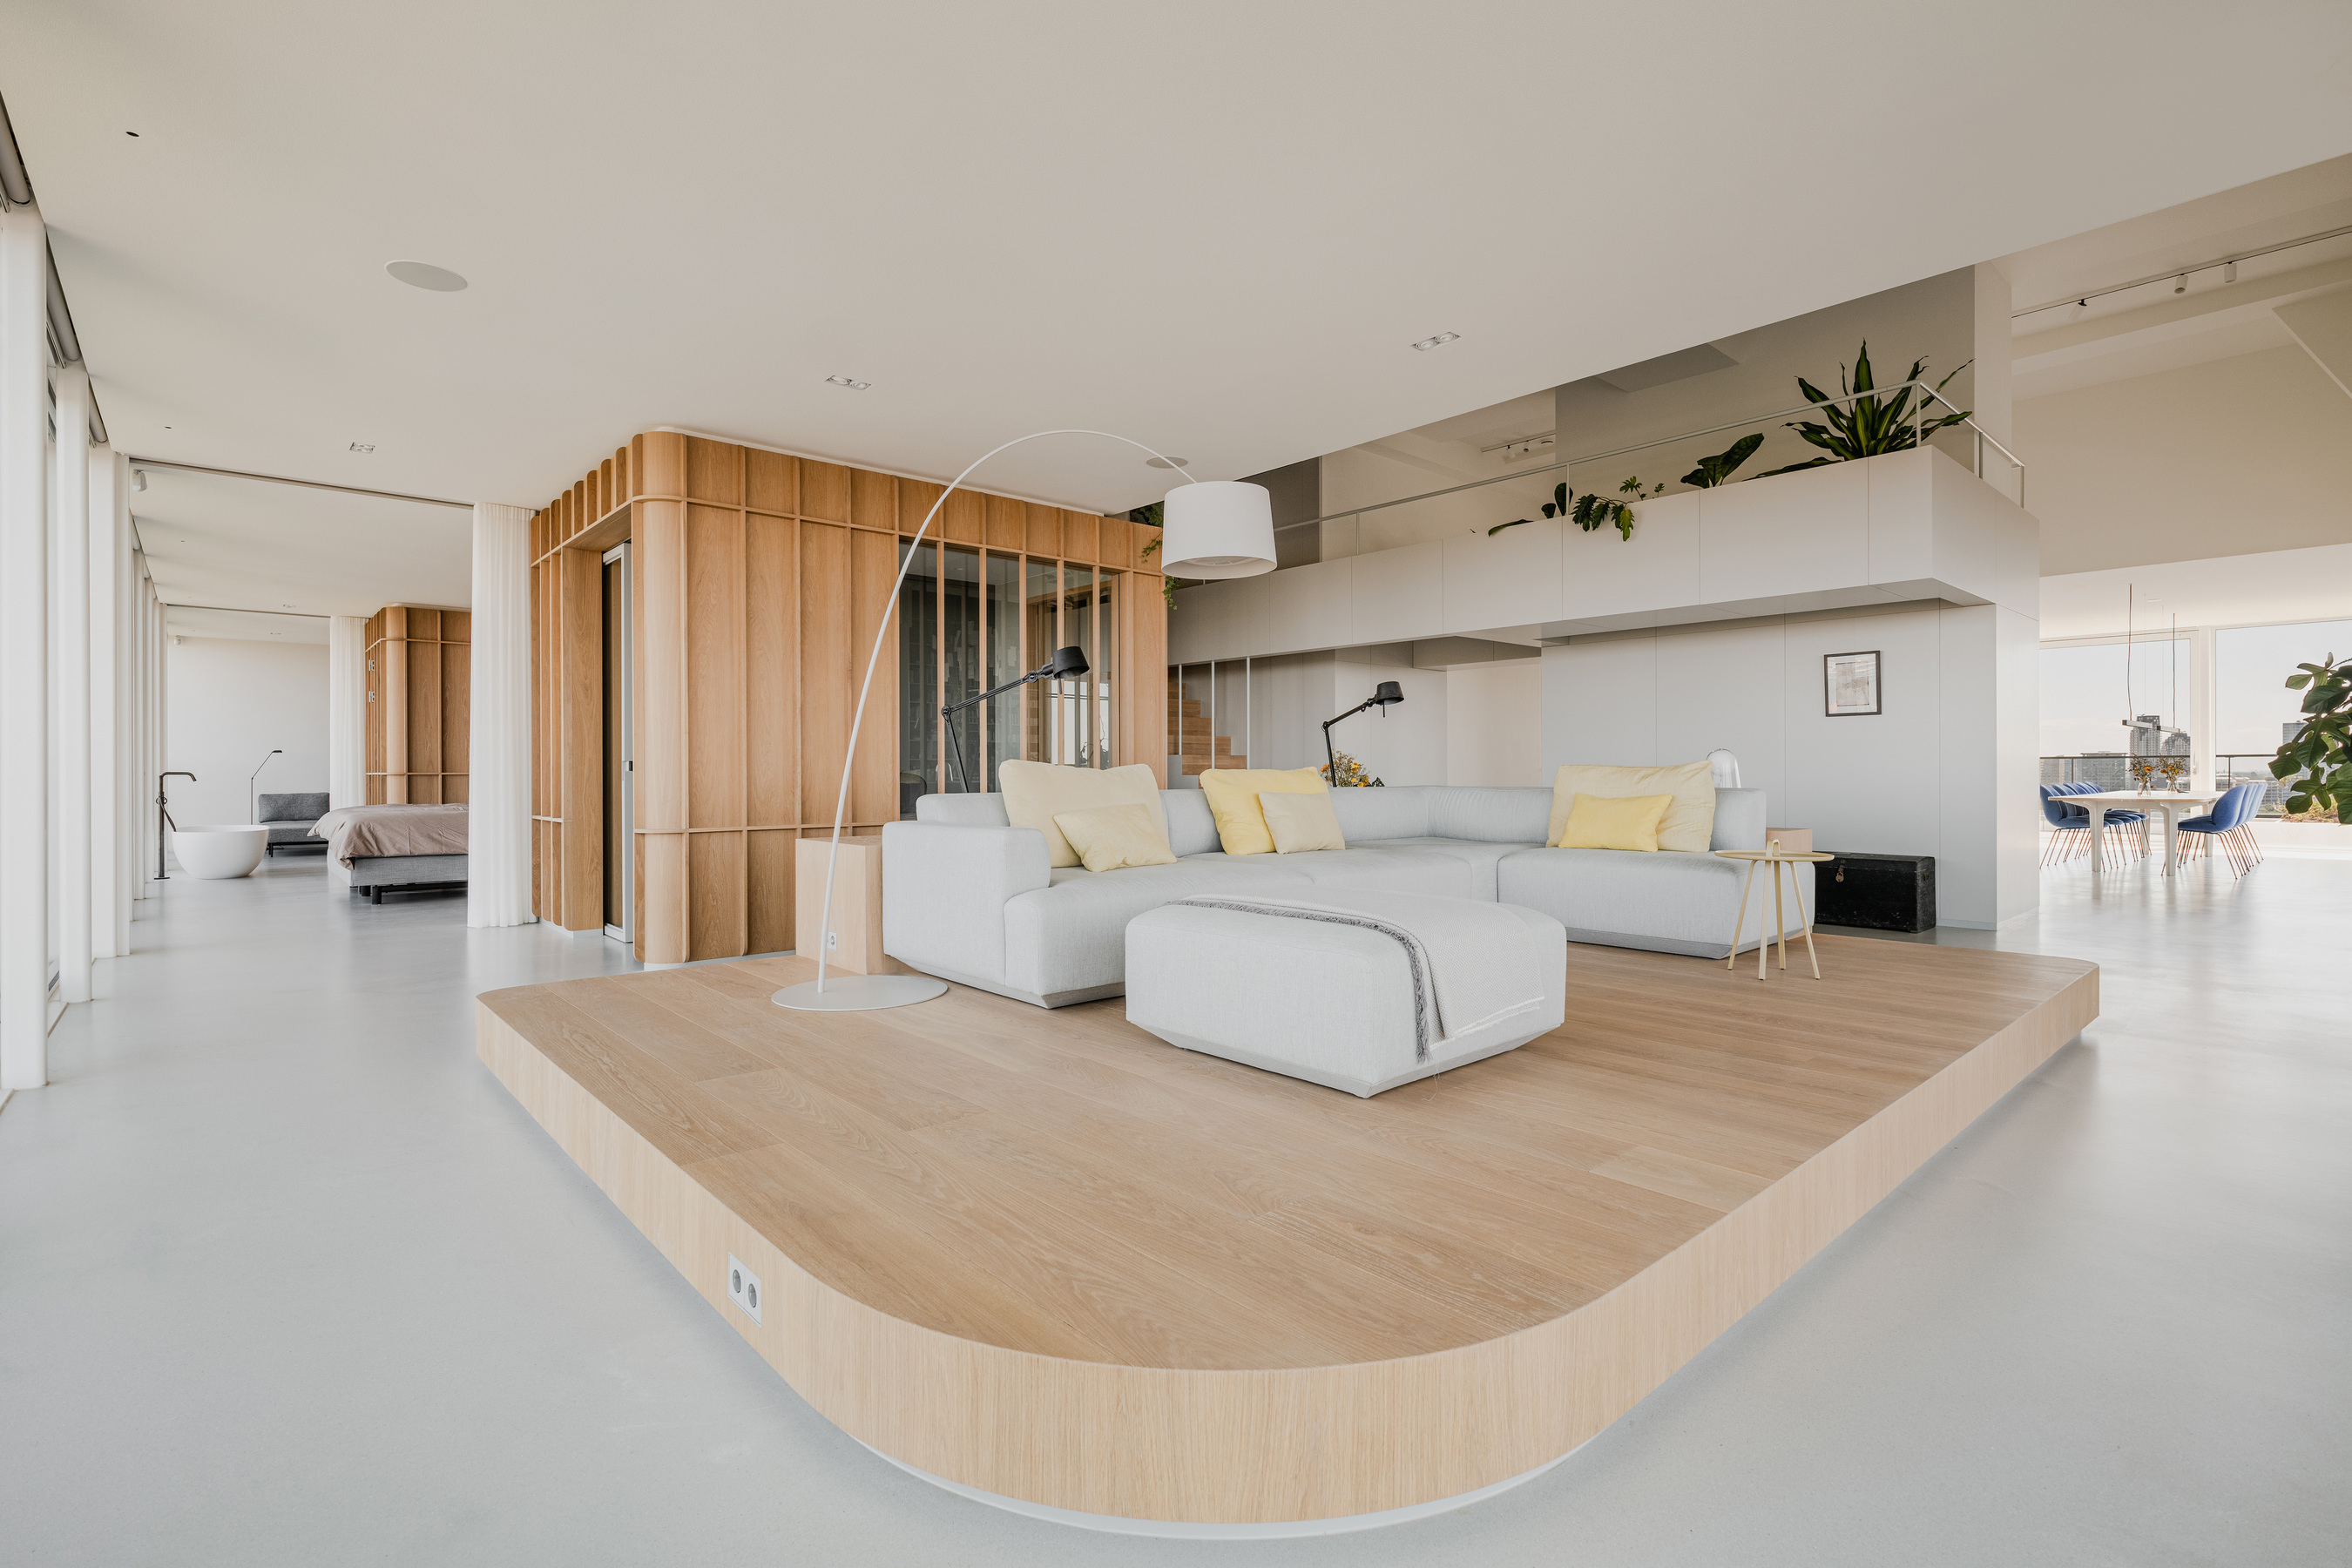 以木地板架高方式定義出起居空間，同時保有開闊視感，簡單俐落的 L 型沙發造就無與倫比的首席視野座位區。